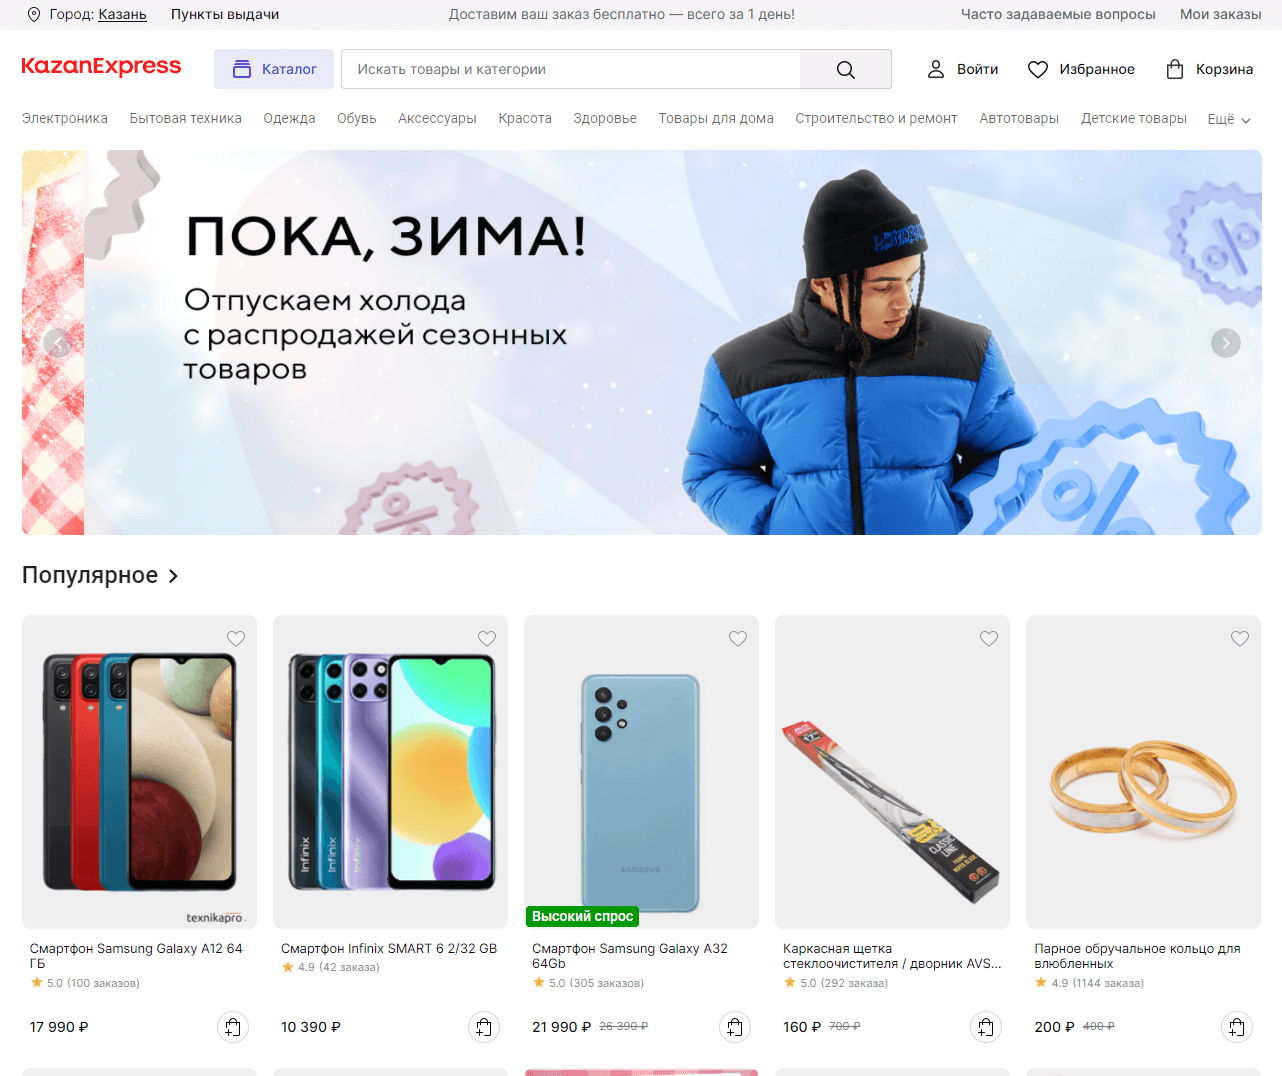 Главная страница официального сайта Kazan Express